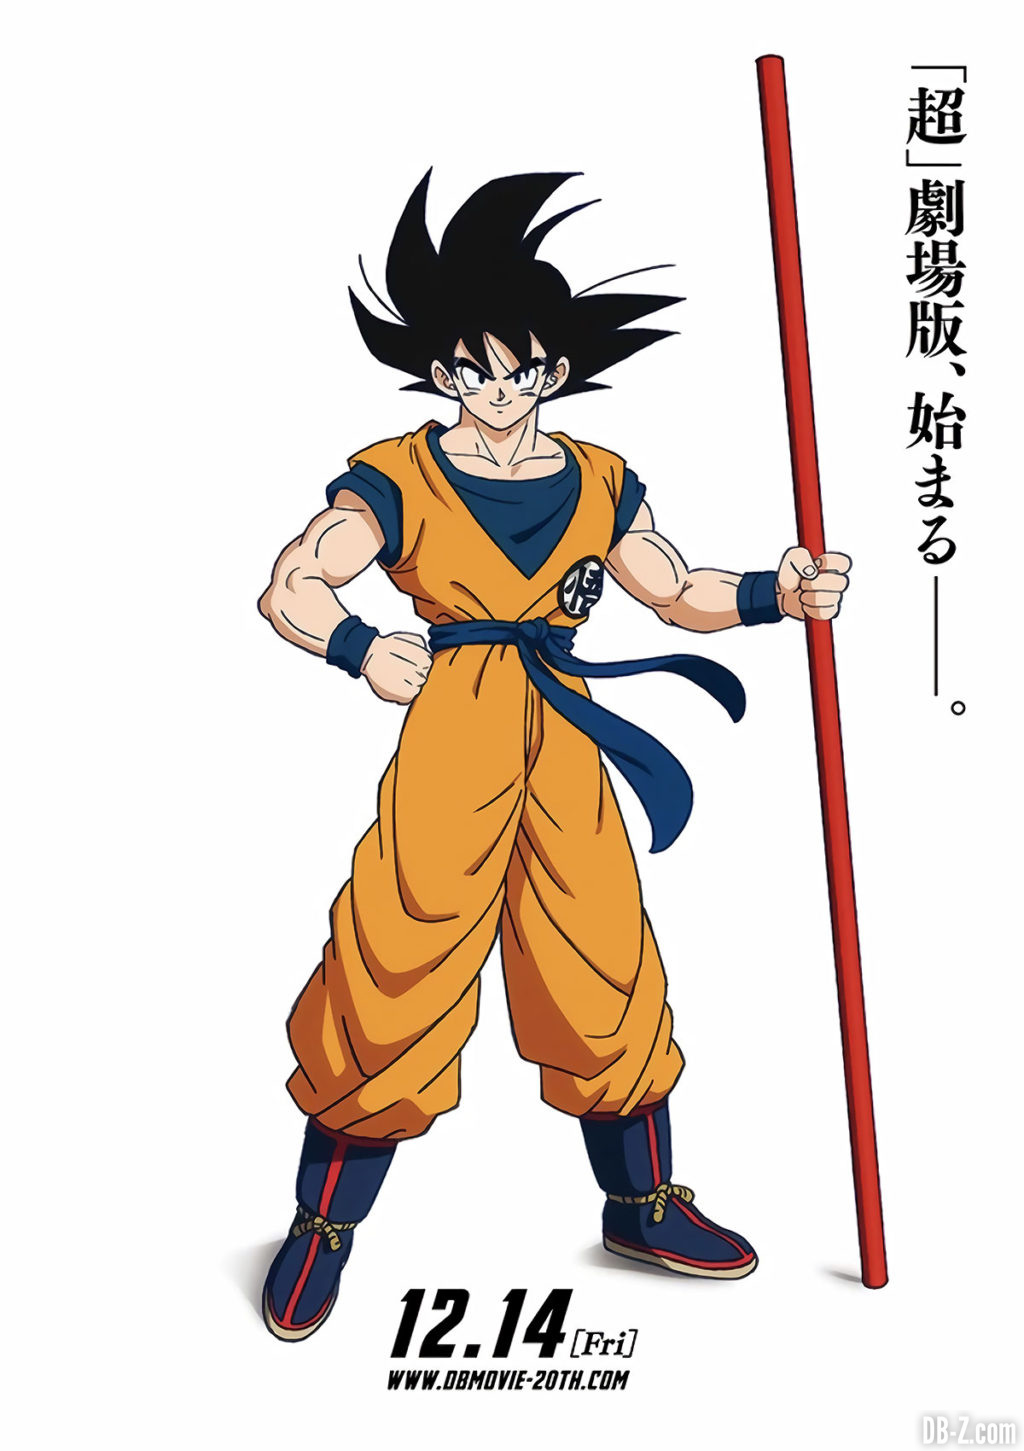 Affiche promotionnelle du film Dragon Ball Super Broly (Goku & le bâton magique Nyoibo)